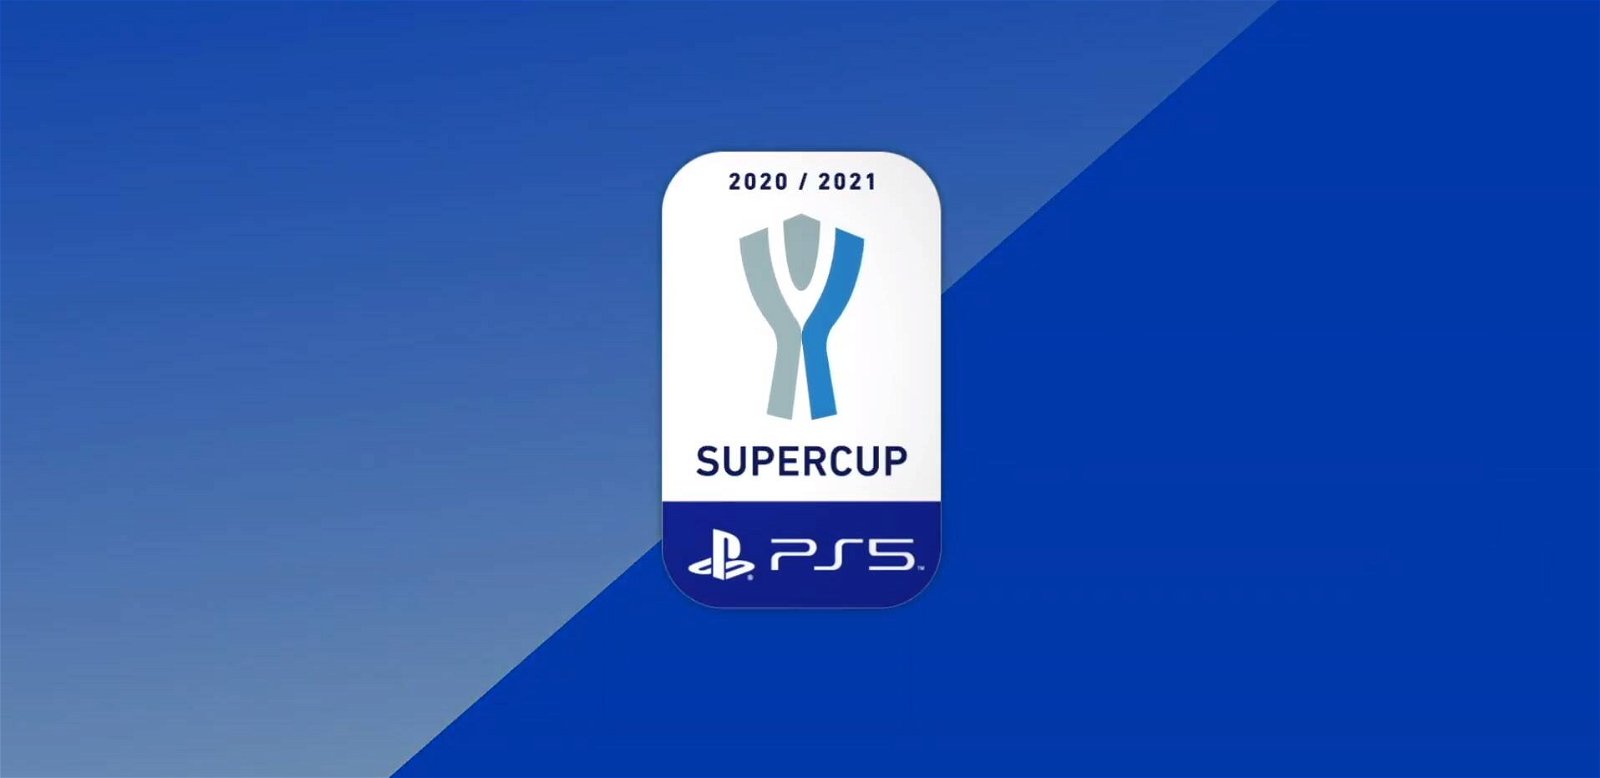 Immagine di PS5 sarà lo sponsor principale della Supercoppa Italiana 2020